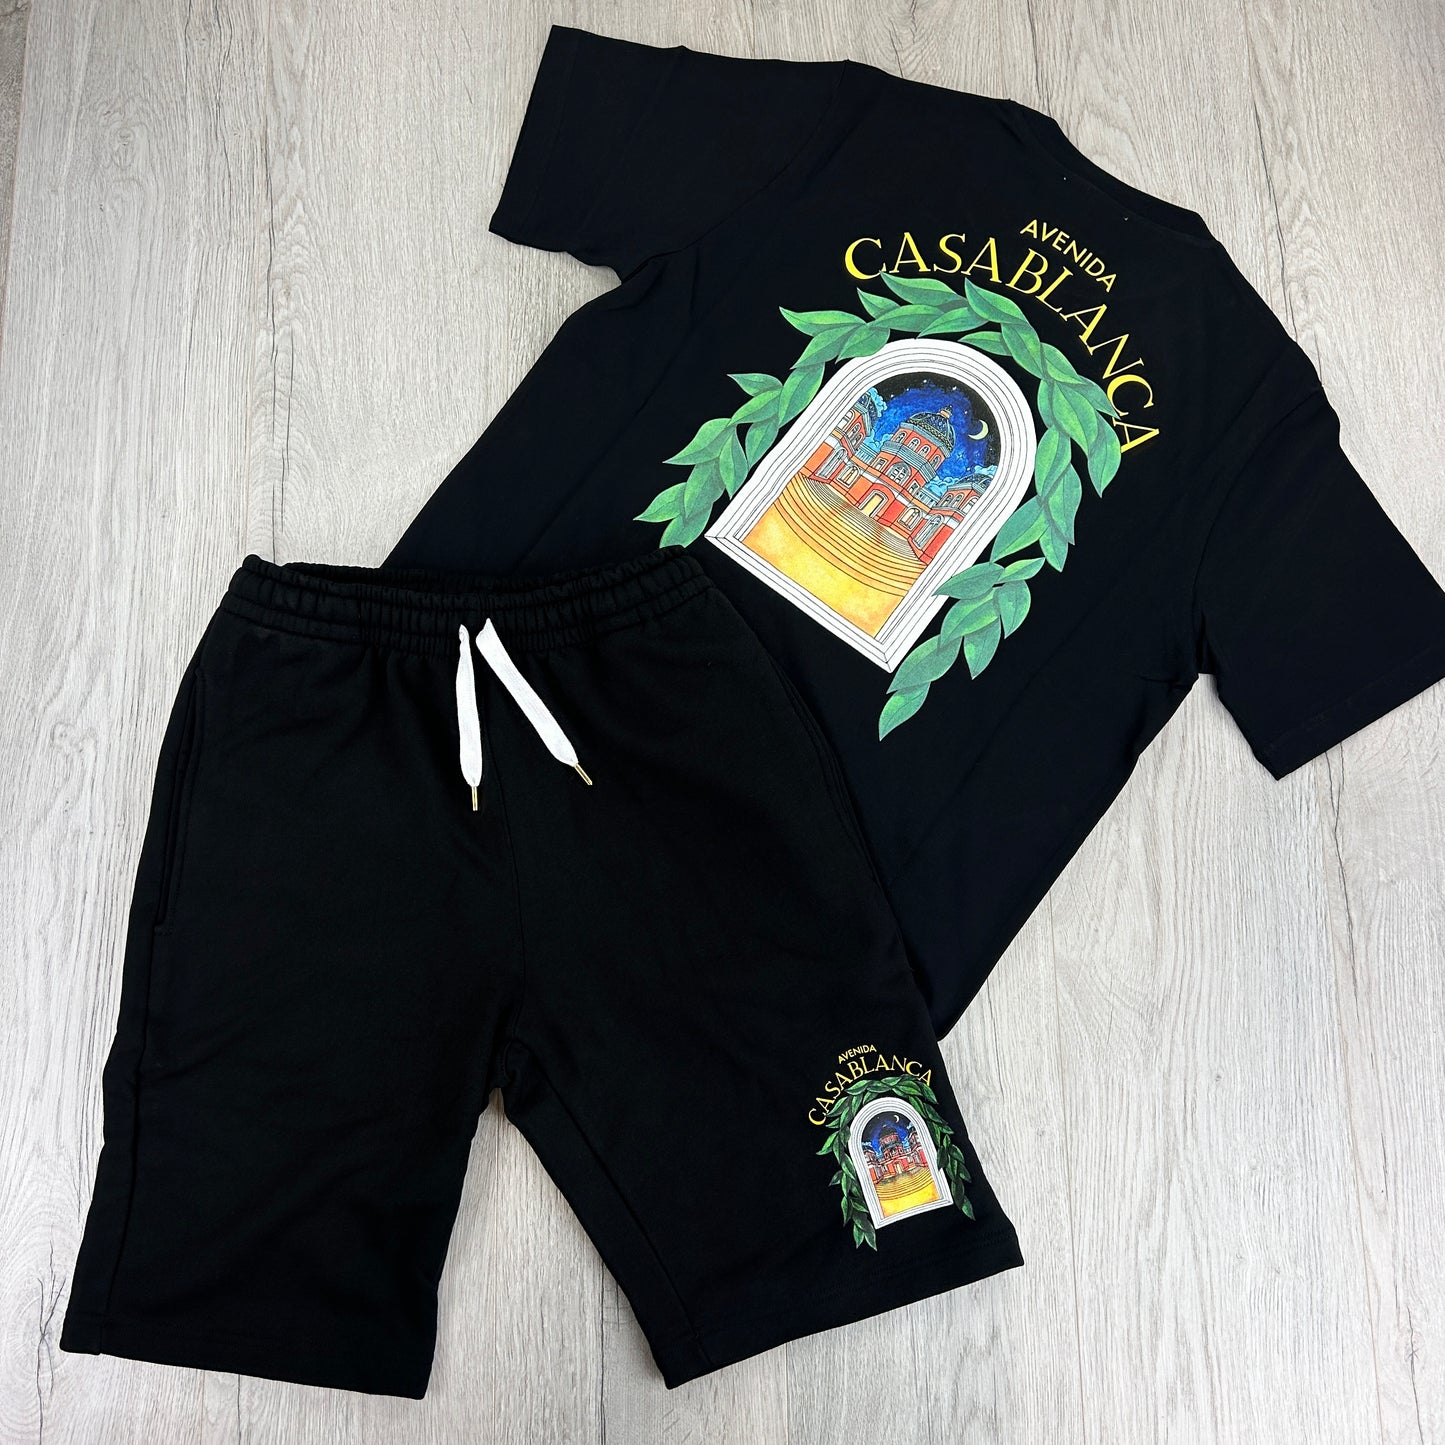 Casa Blanca Avenida Men’s Black T-shirt & Short Set